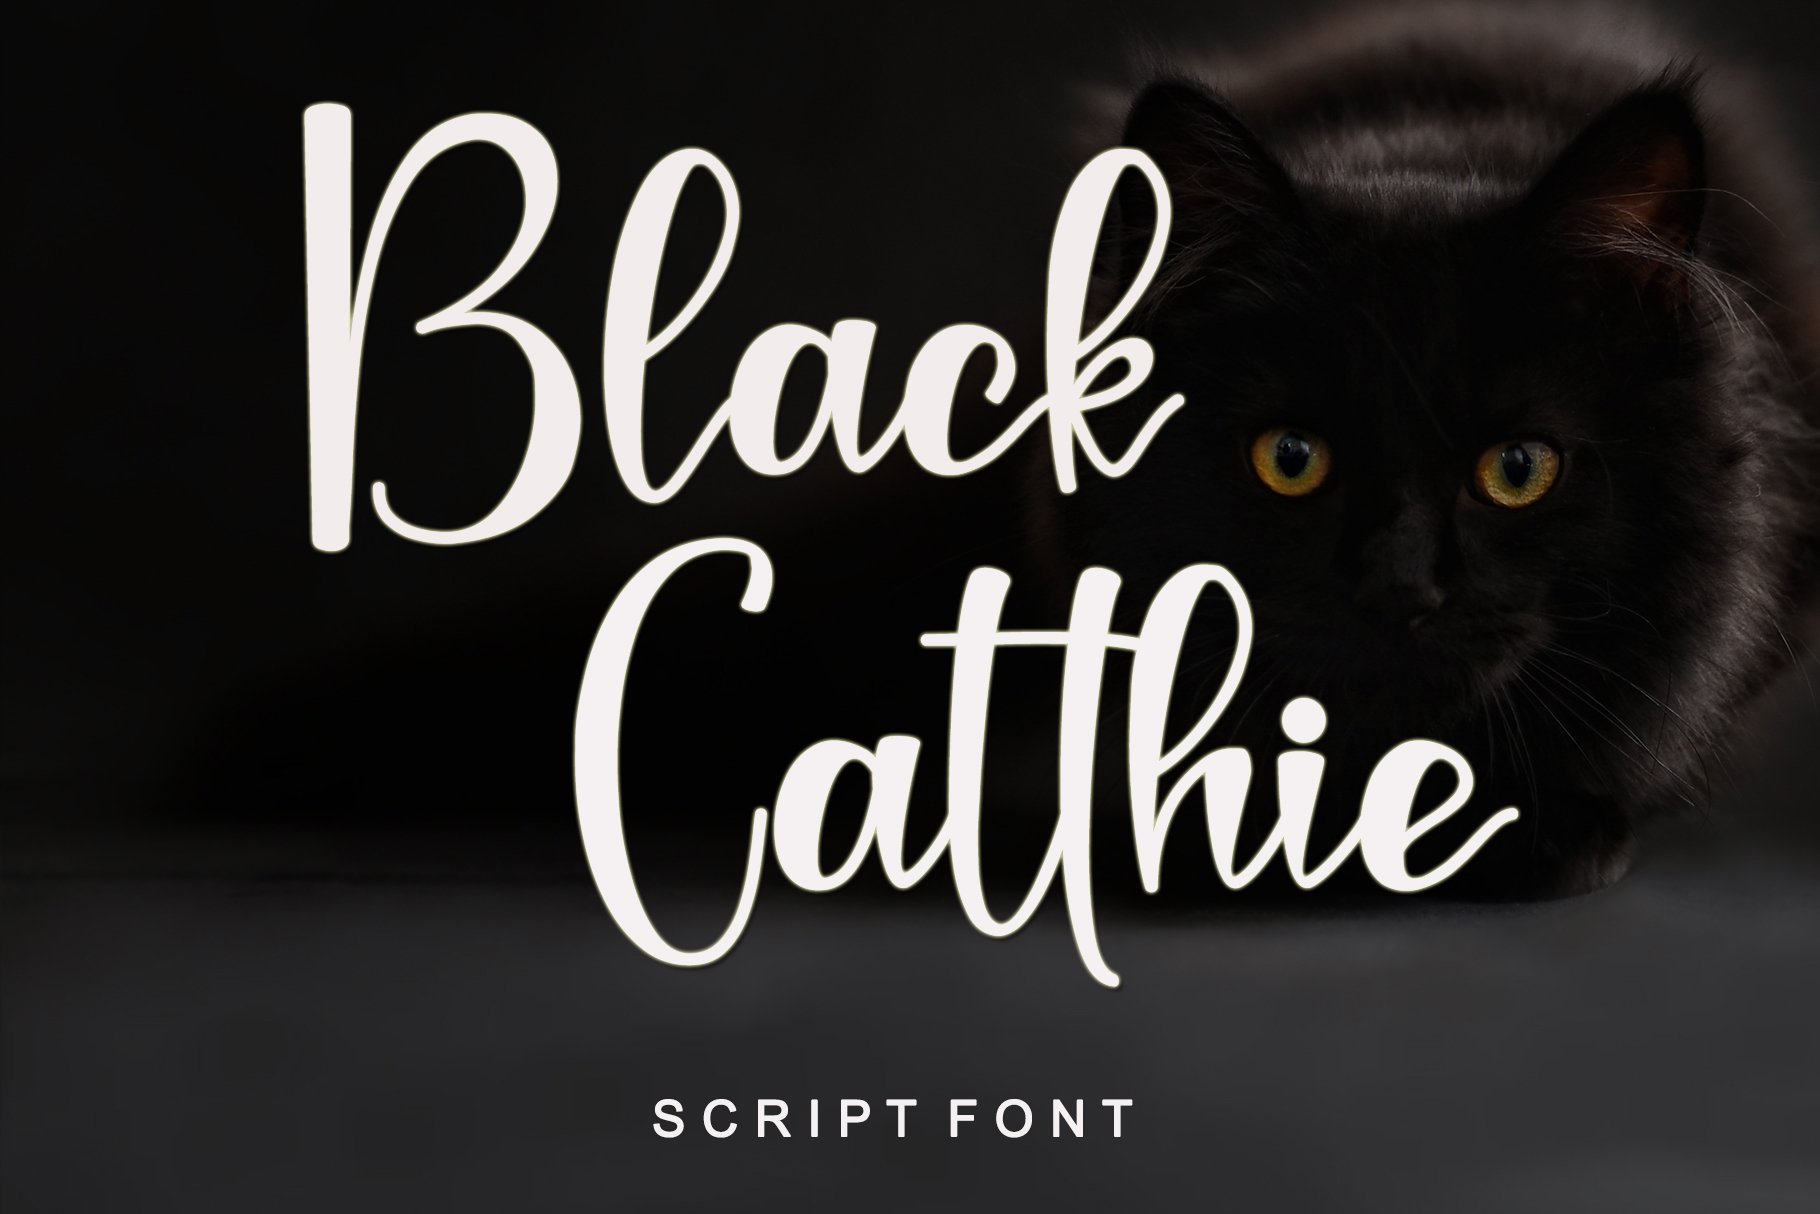 Black Catthie Font